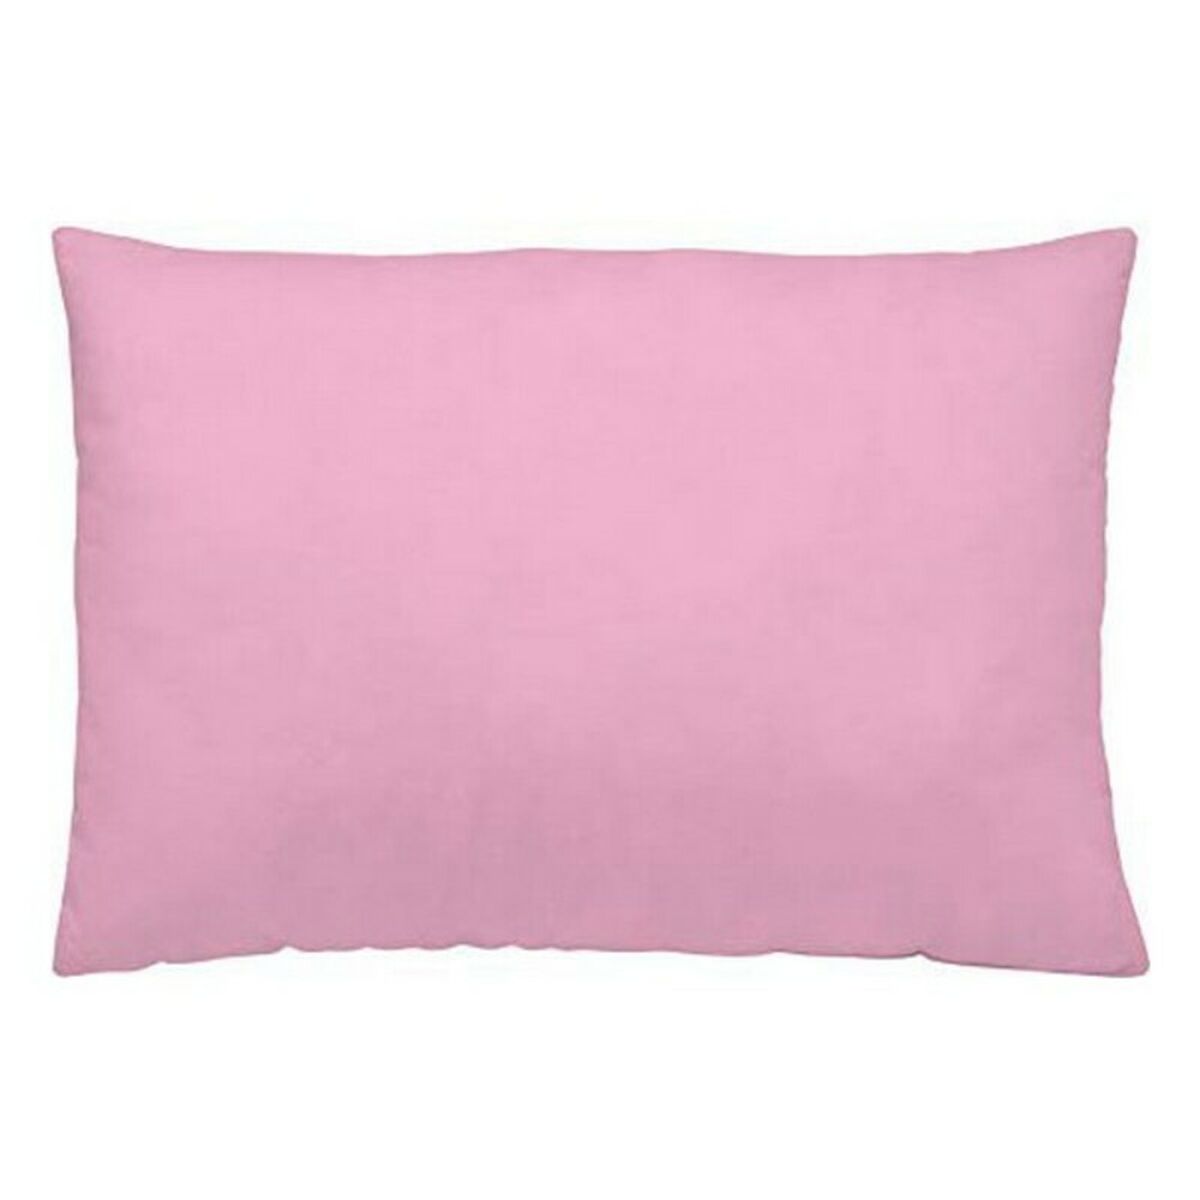 Pillowcase Naturals Light Pink (45 x 110 cm)